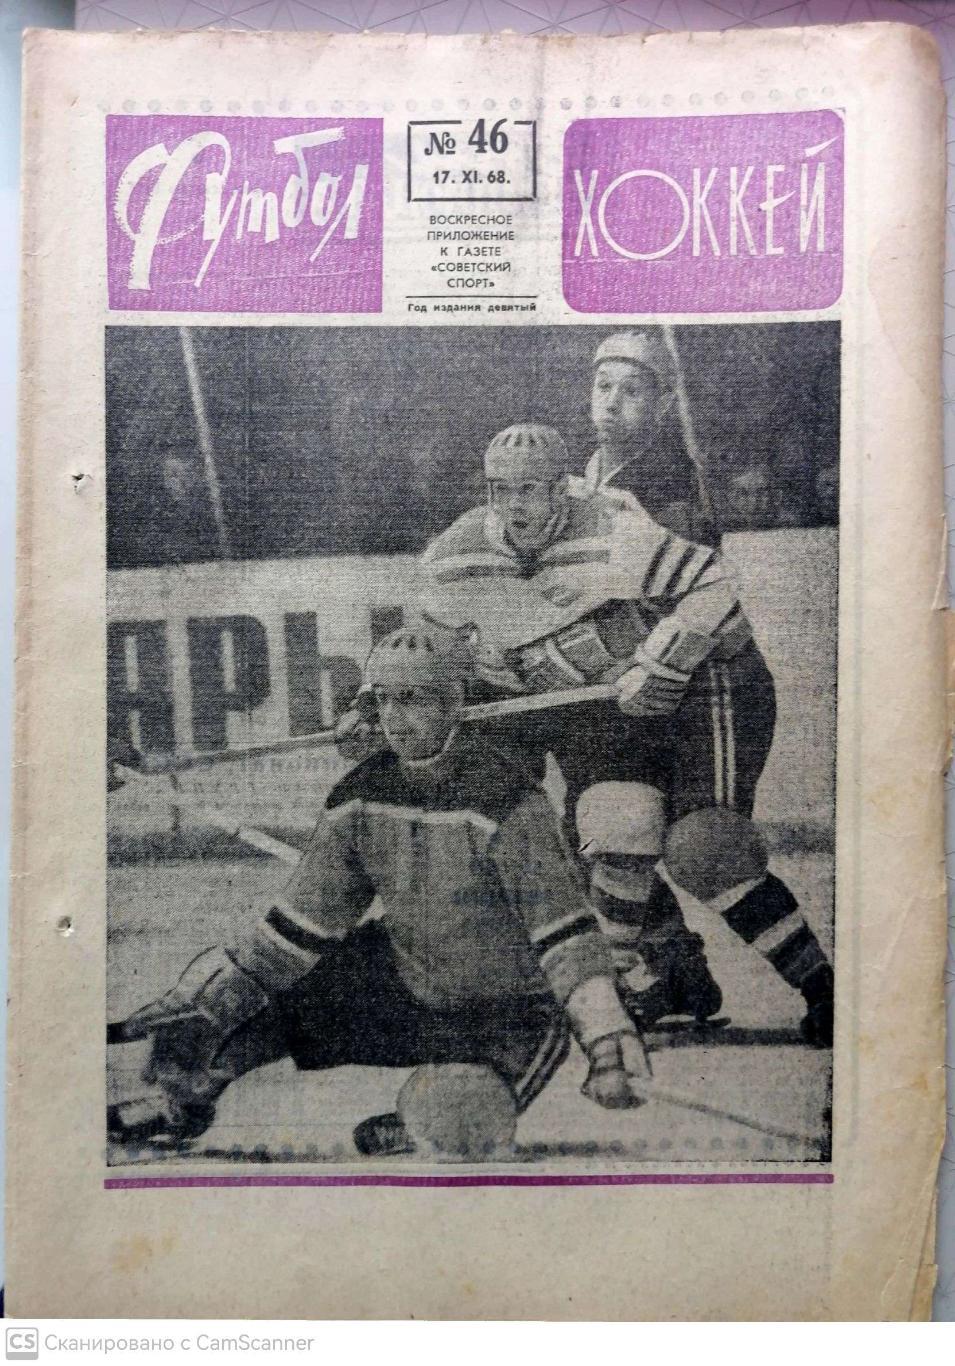 Еженедельник «Футбол-Хоккей». 1968 год. №46